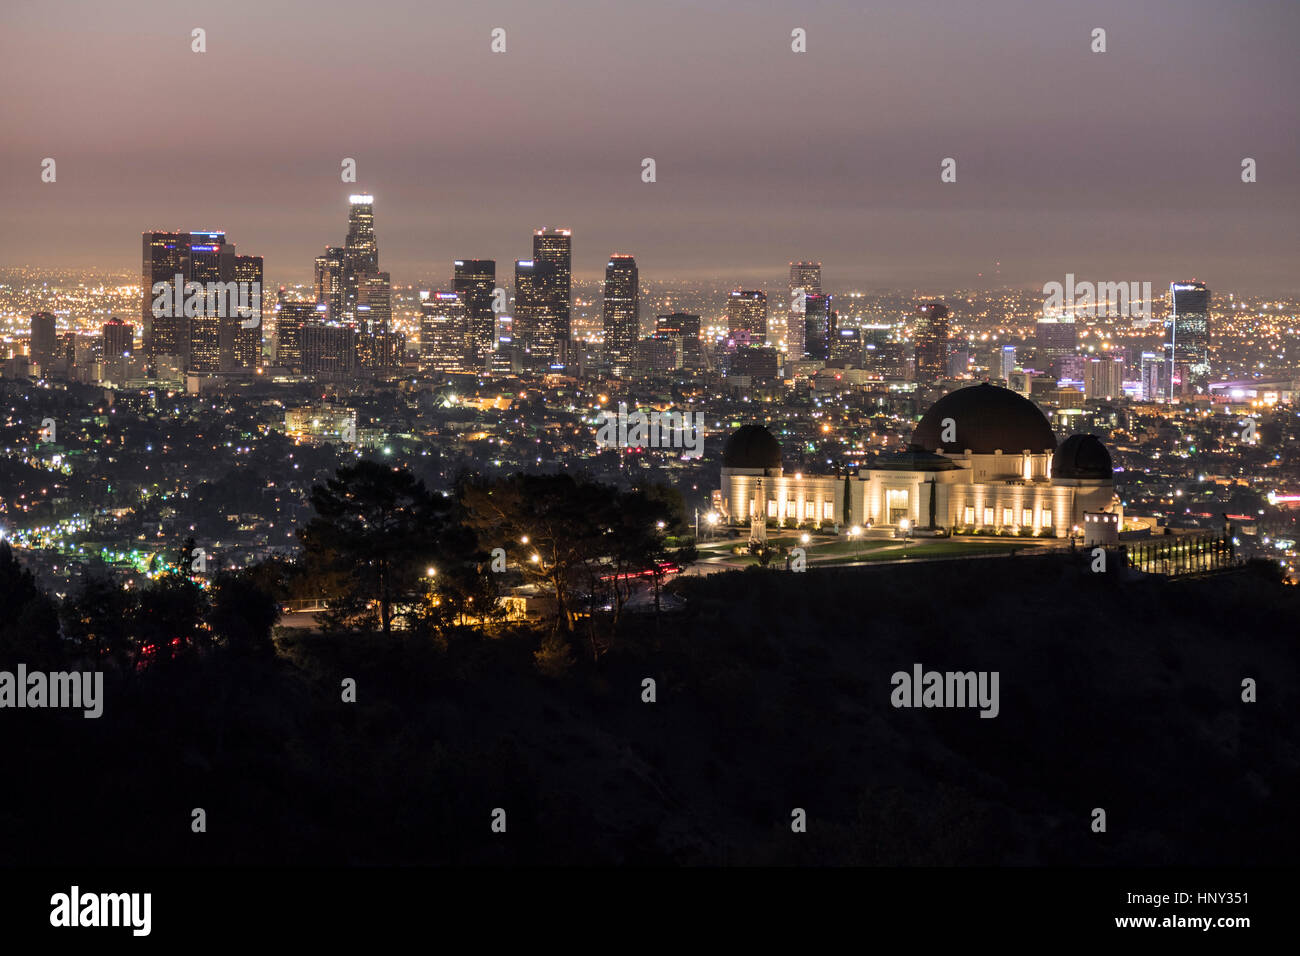 Los Angeles, California, Stati Uniti d'America - 5 Ottobre 2014: Griffith Observatory e il centro cittadino di Los Angeles all'alba. Foto Stock